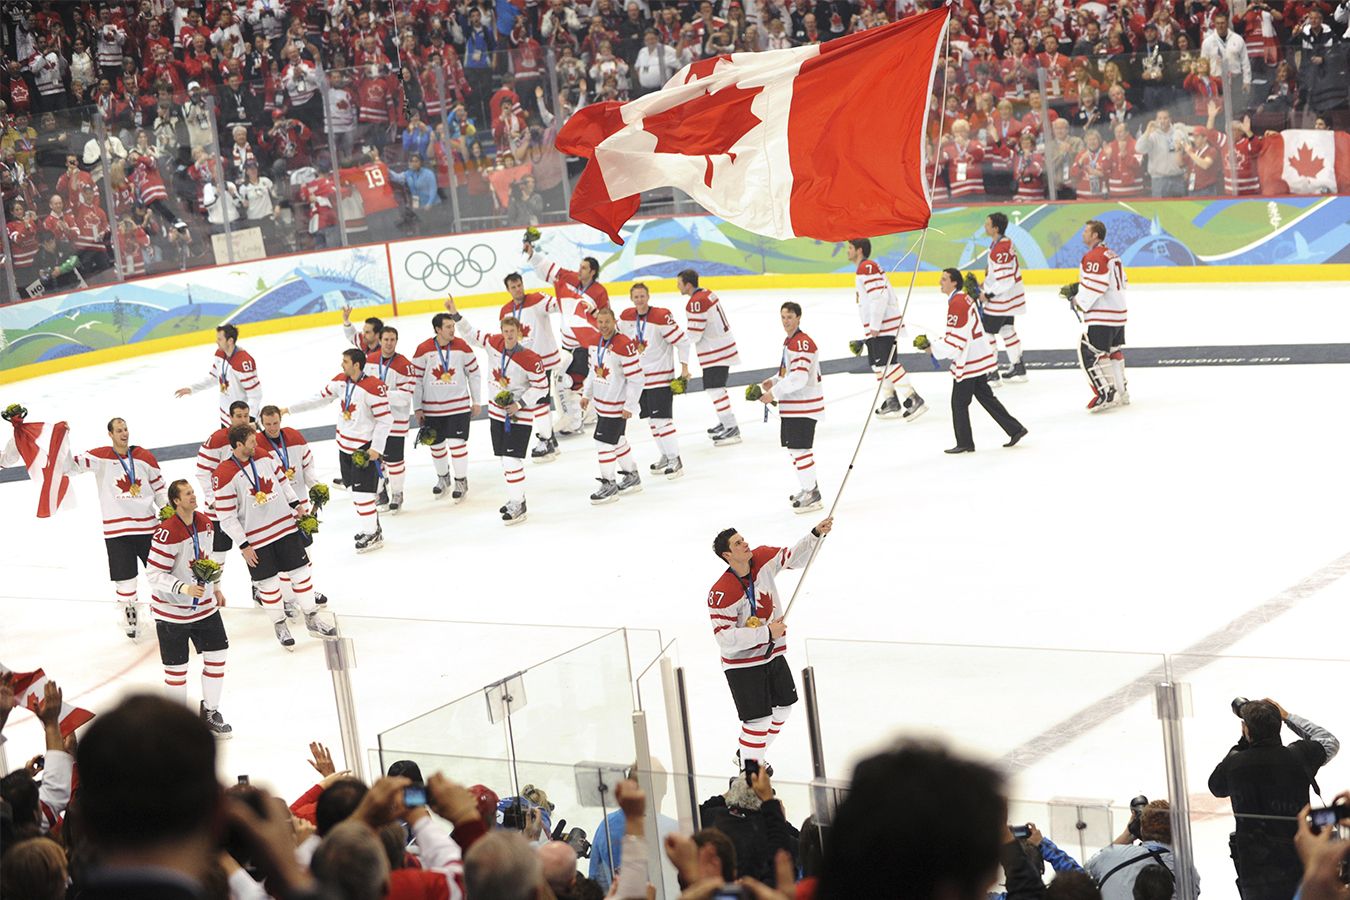 Лучшие моменты в истории Олимпиады с игроками НХЛ, рейтинг: хит Овечкина на Ягре, гол Кросби в финале, игра Гашека